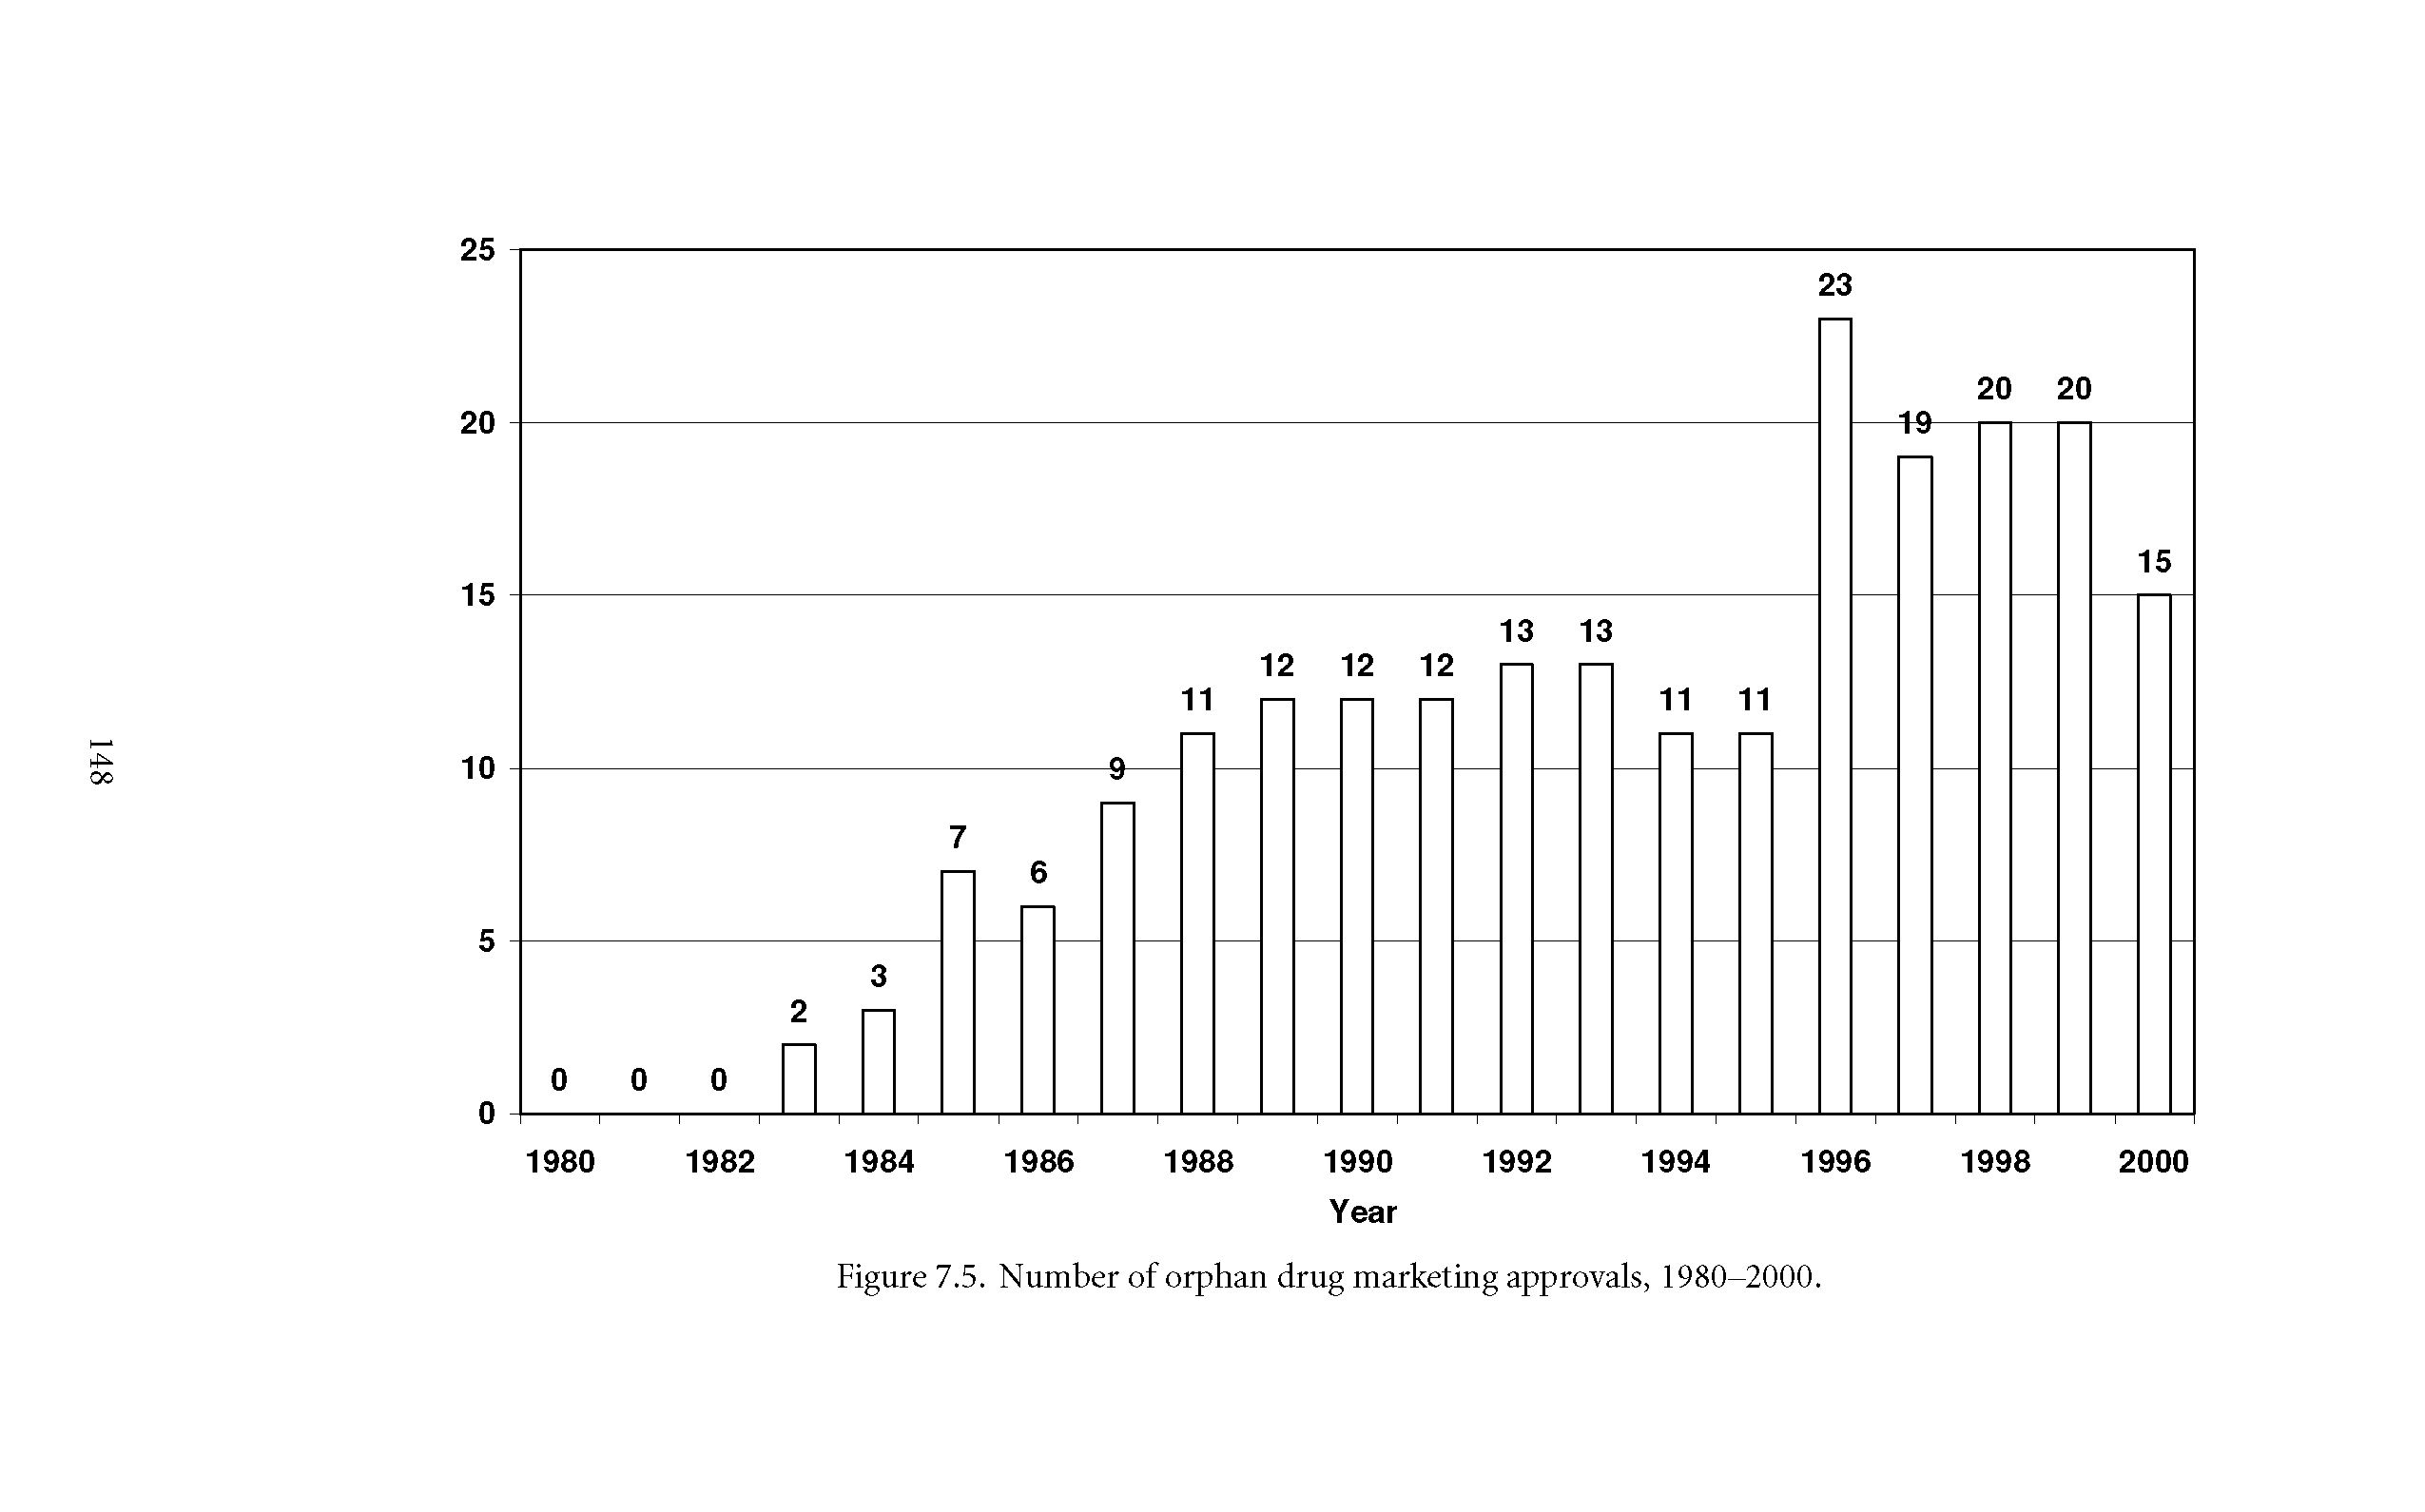 Figure 7.5. Number of orphan drug marketing approvals, 1980-2000.